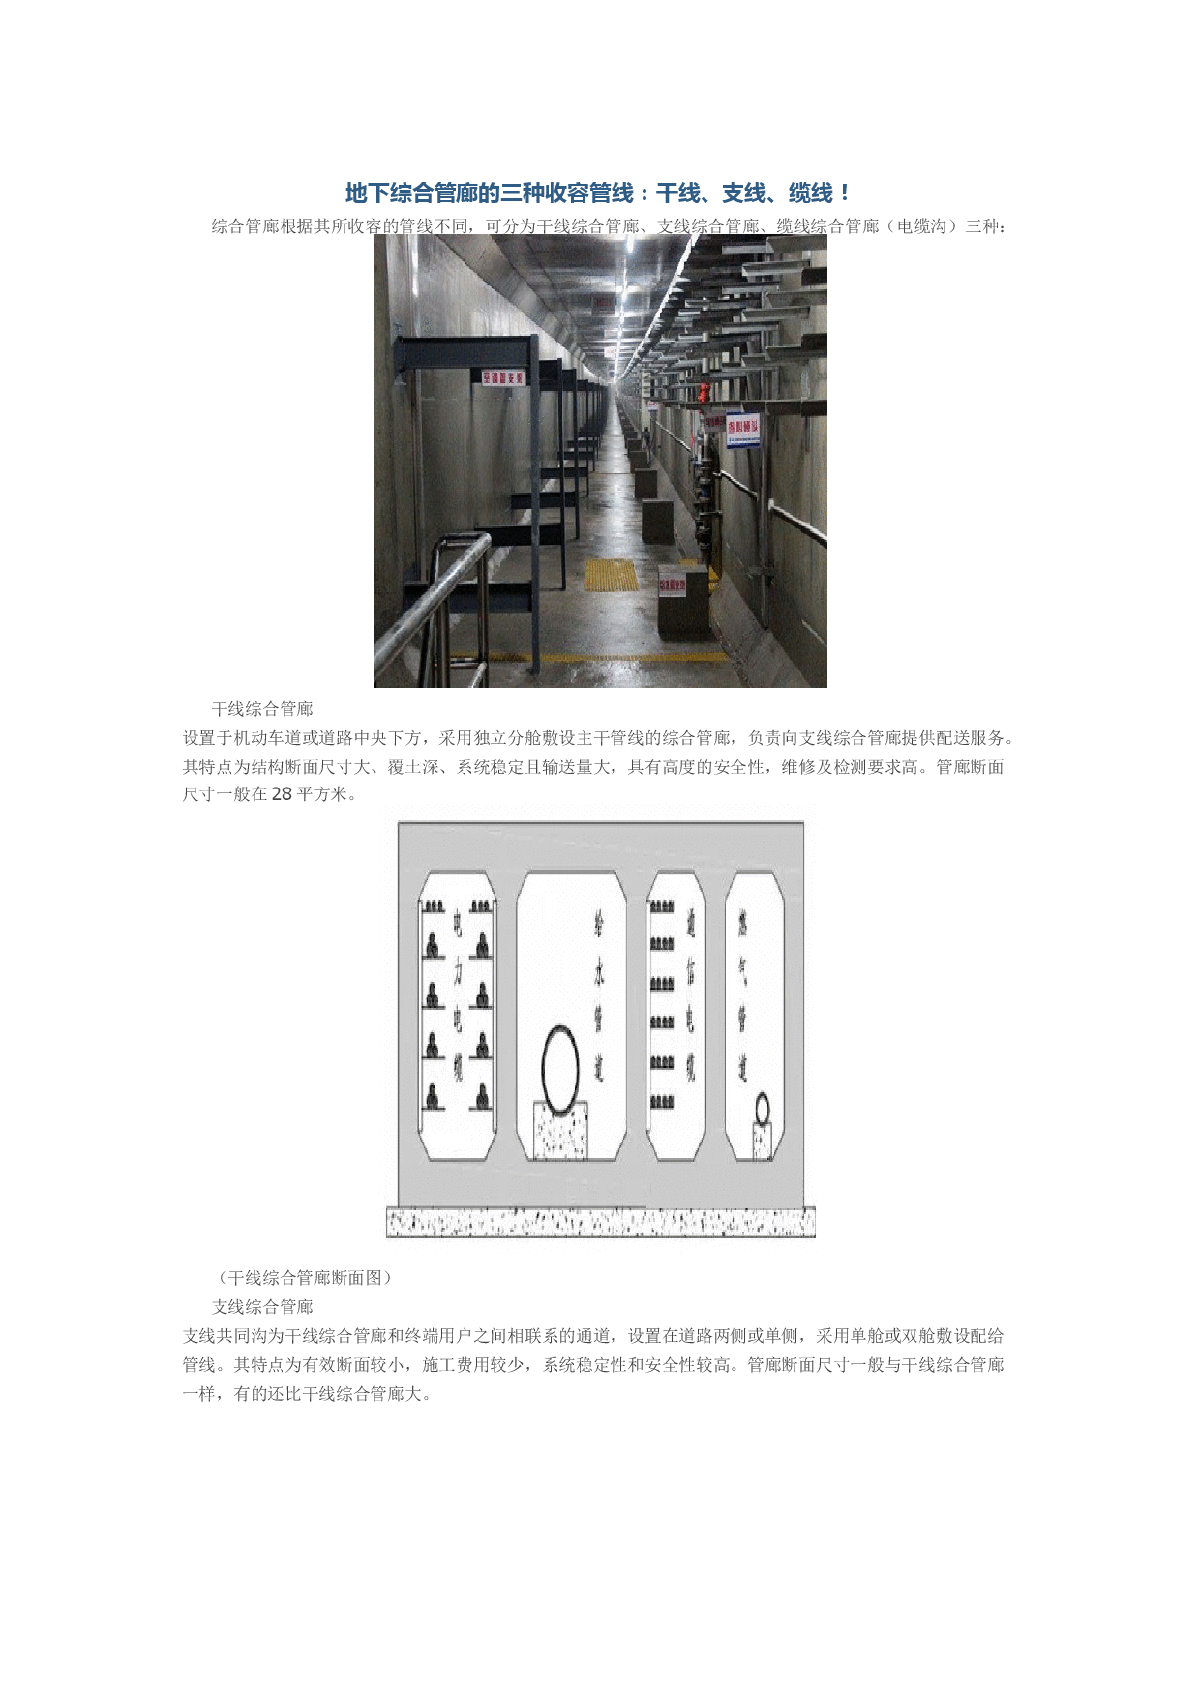 地下综合管廊的三种收容管线：干线、支线、缆线